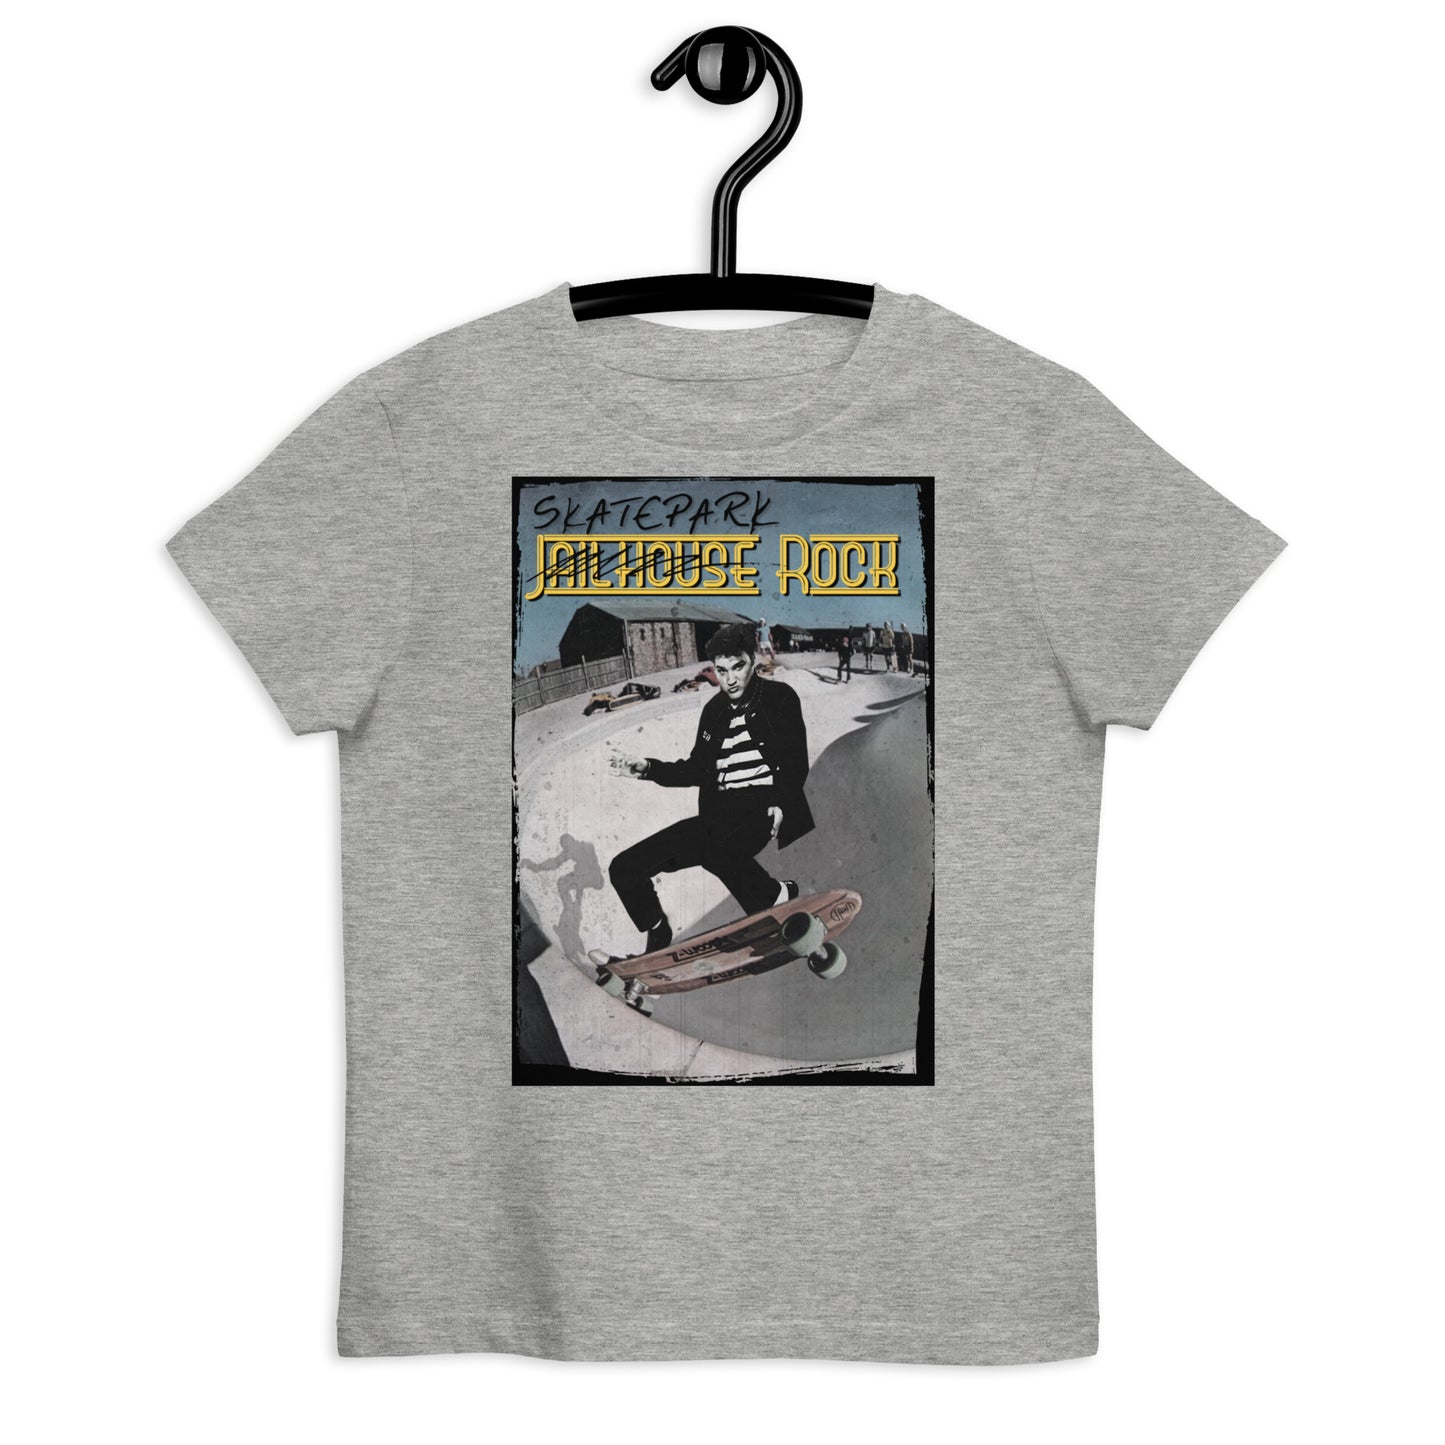 Elvis Presley Skater Organic cotton kids t-shirt - Skatepark Jailhouse rock n roll